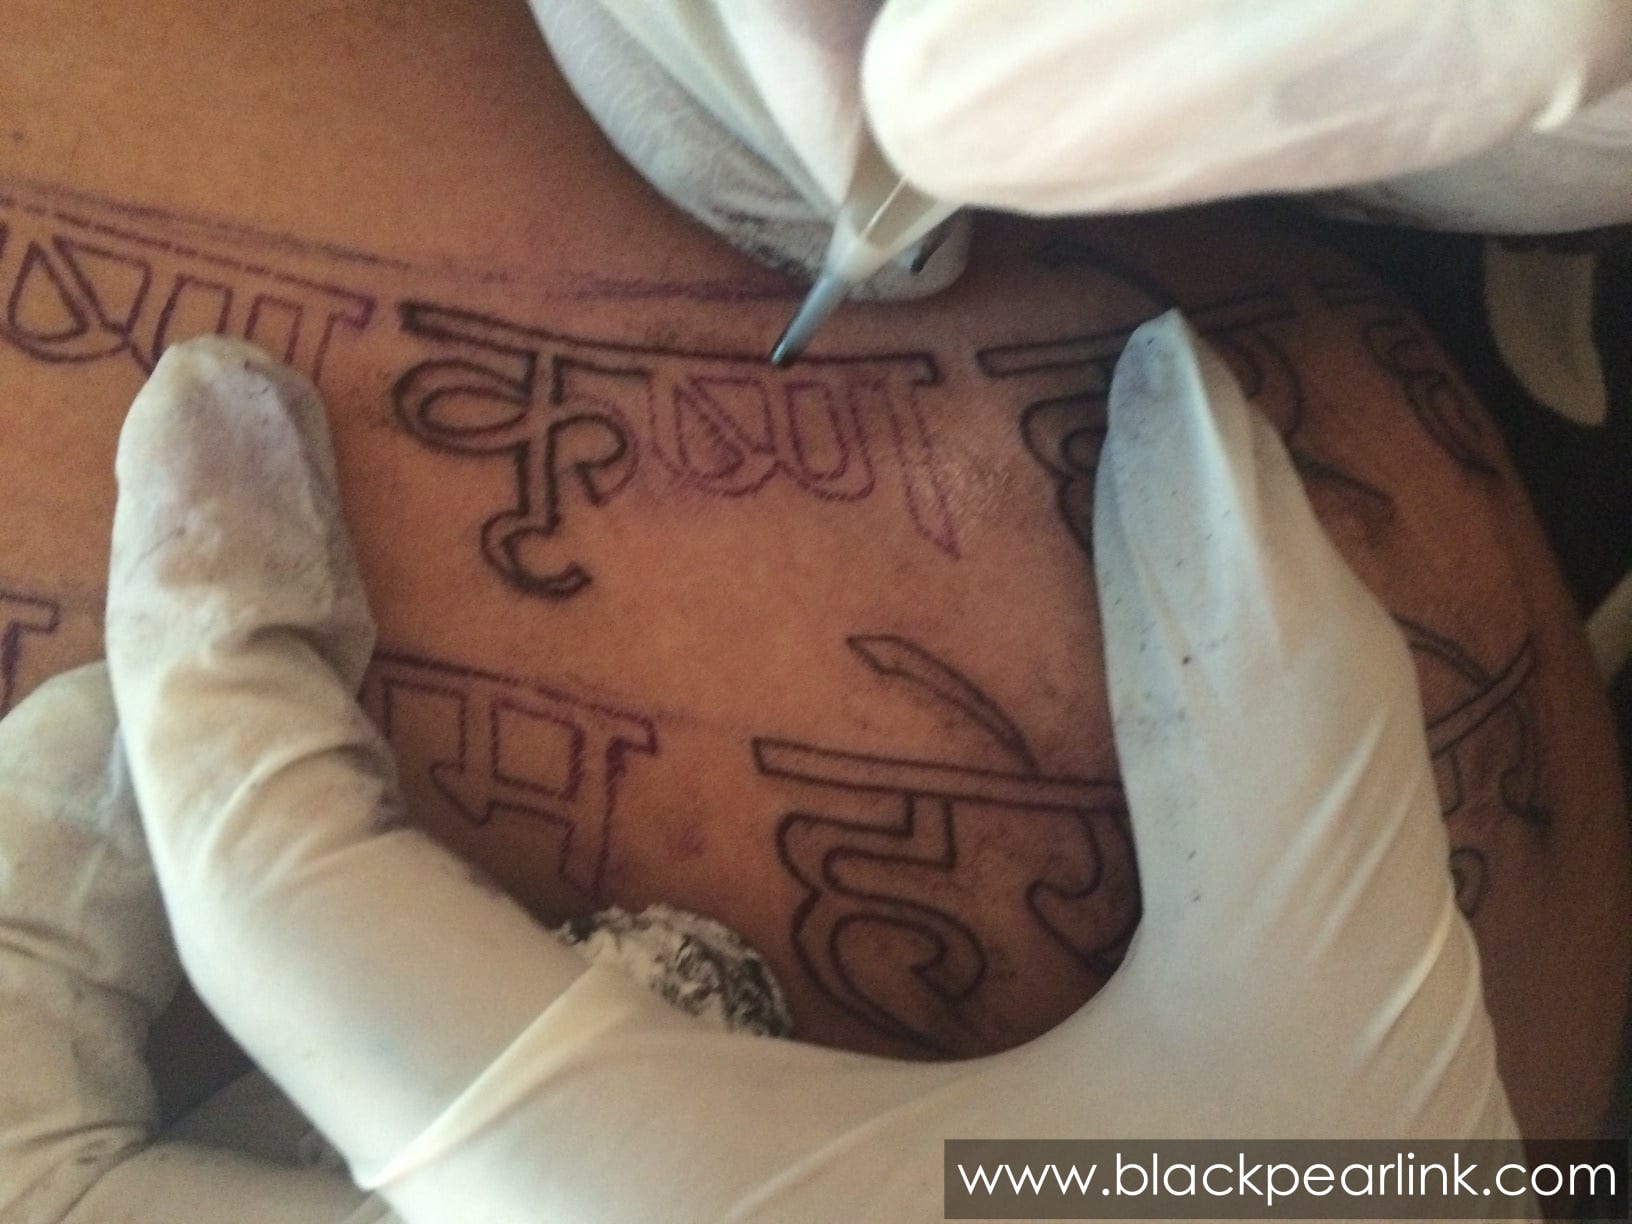 The BlackJack Tattoo - Yada yada hi dharmsya lord Krishna Mantra Tattoo  #theblackjacktattoo #jigneshnagvadiya #mantra #lordkrishna #mahabharata  #gita #bhagavadgita #tattoo #tattoos #tattooinvadodara #tattooinbaroda  #tattooingujarat #vadodara #baroda ...